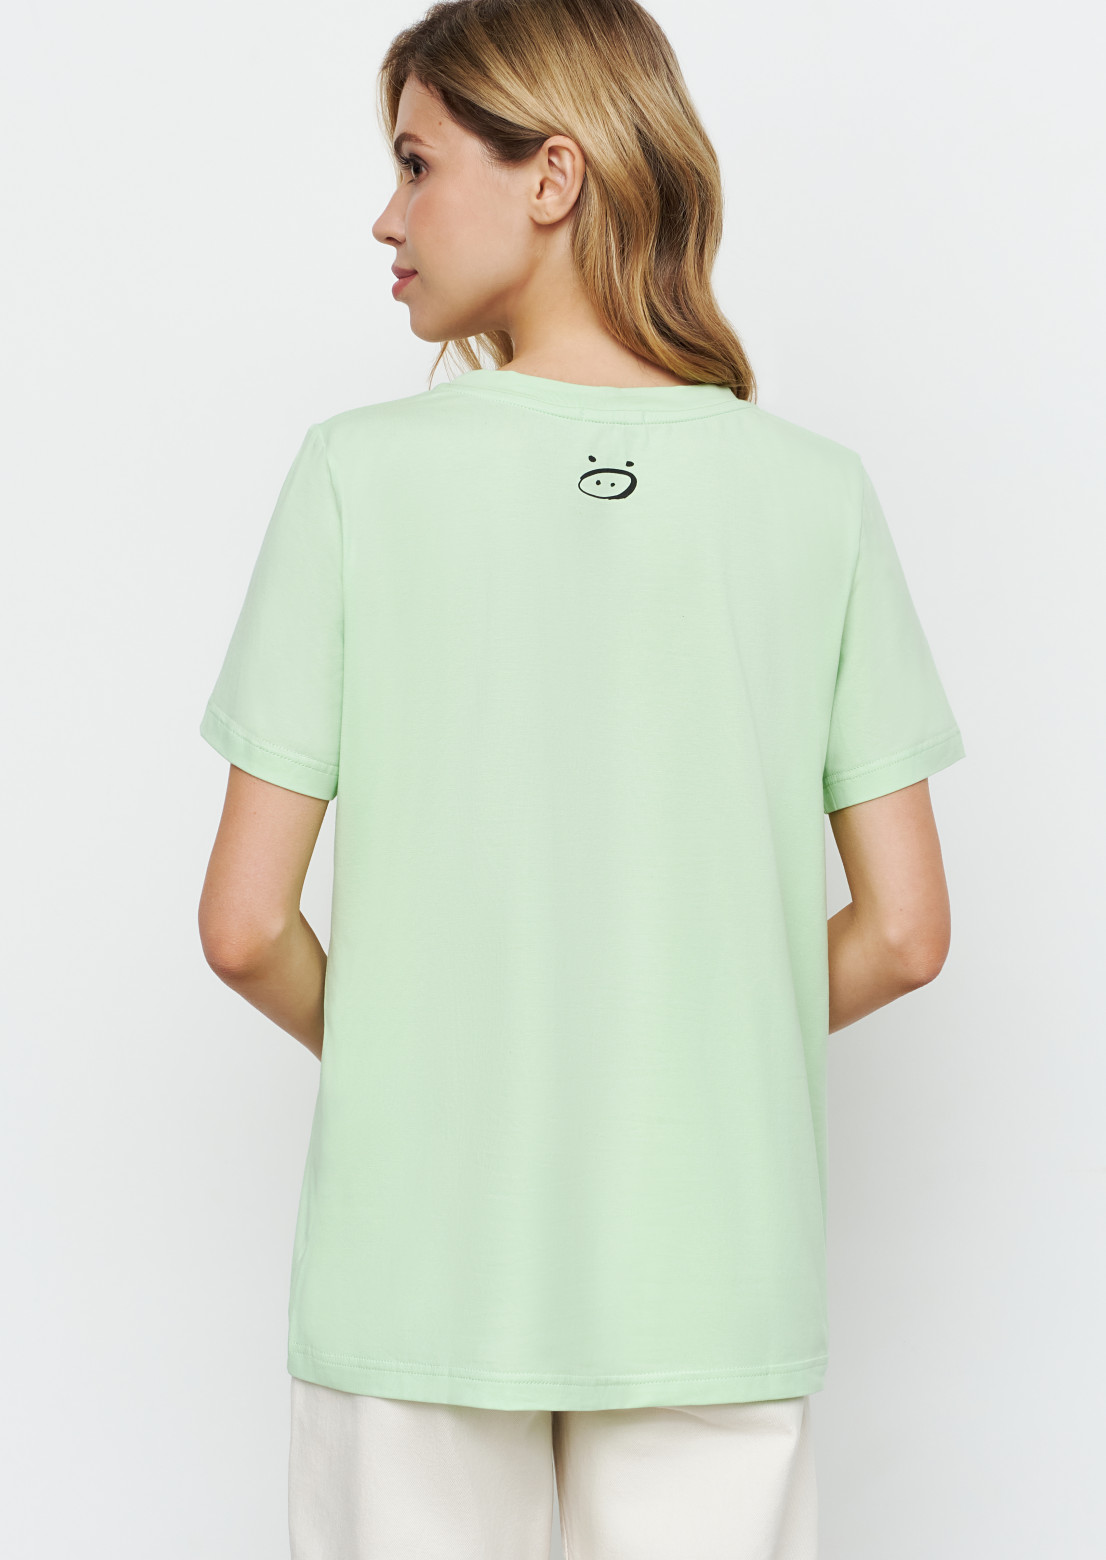 Light green blank T-shirt